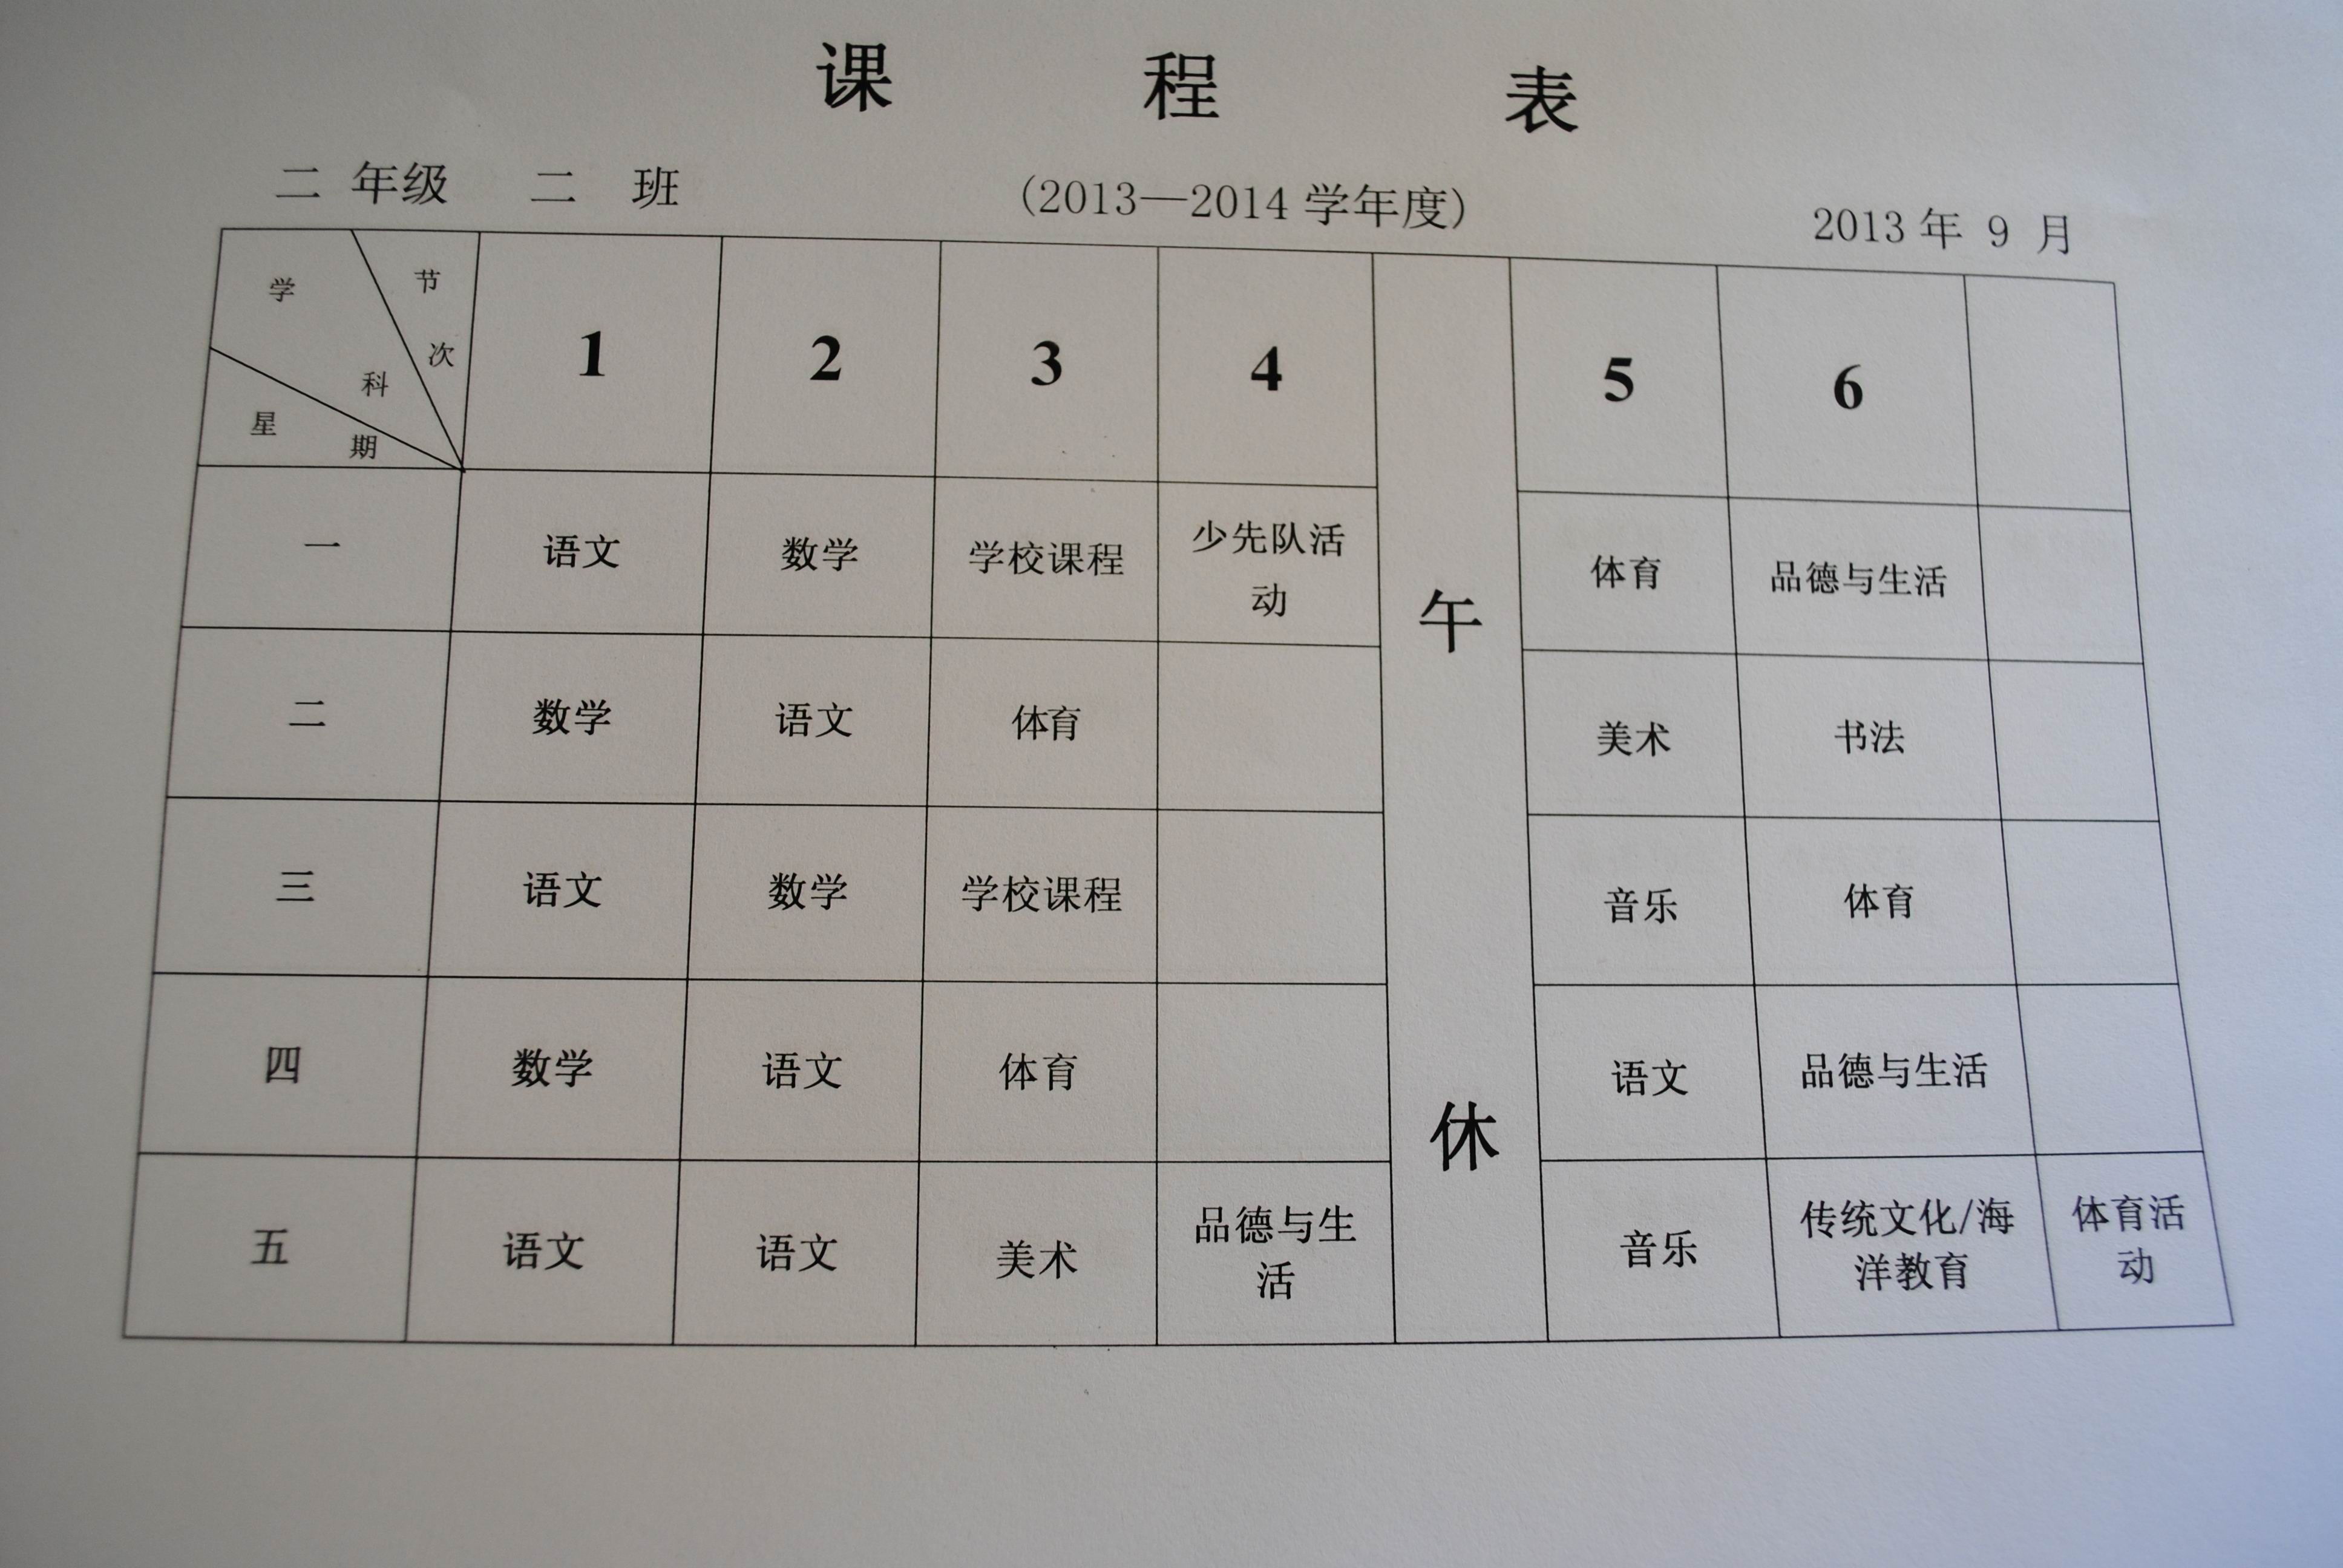 城阳区中华埠小学二年级课程表